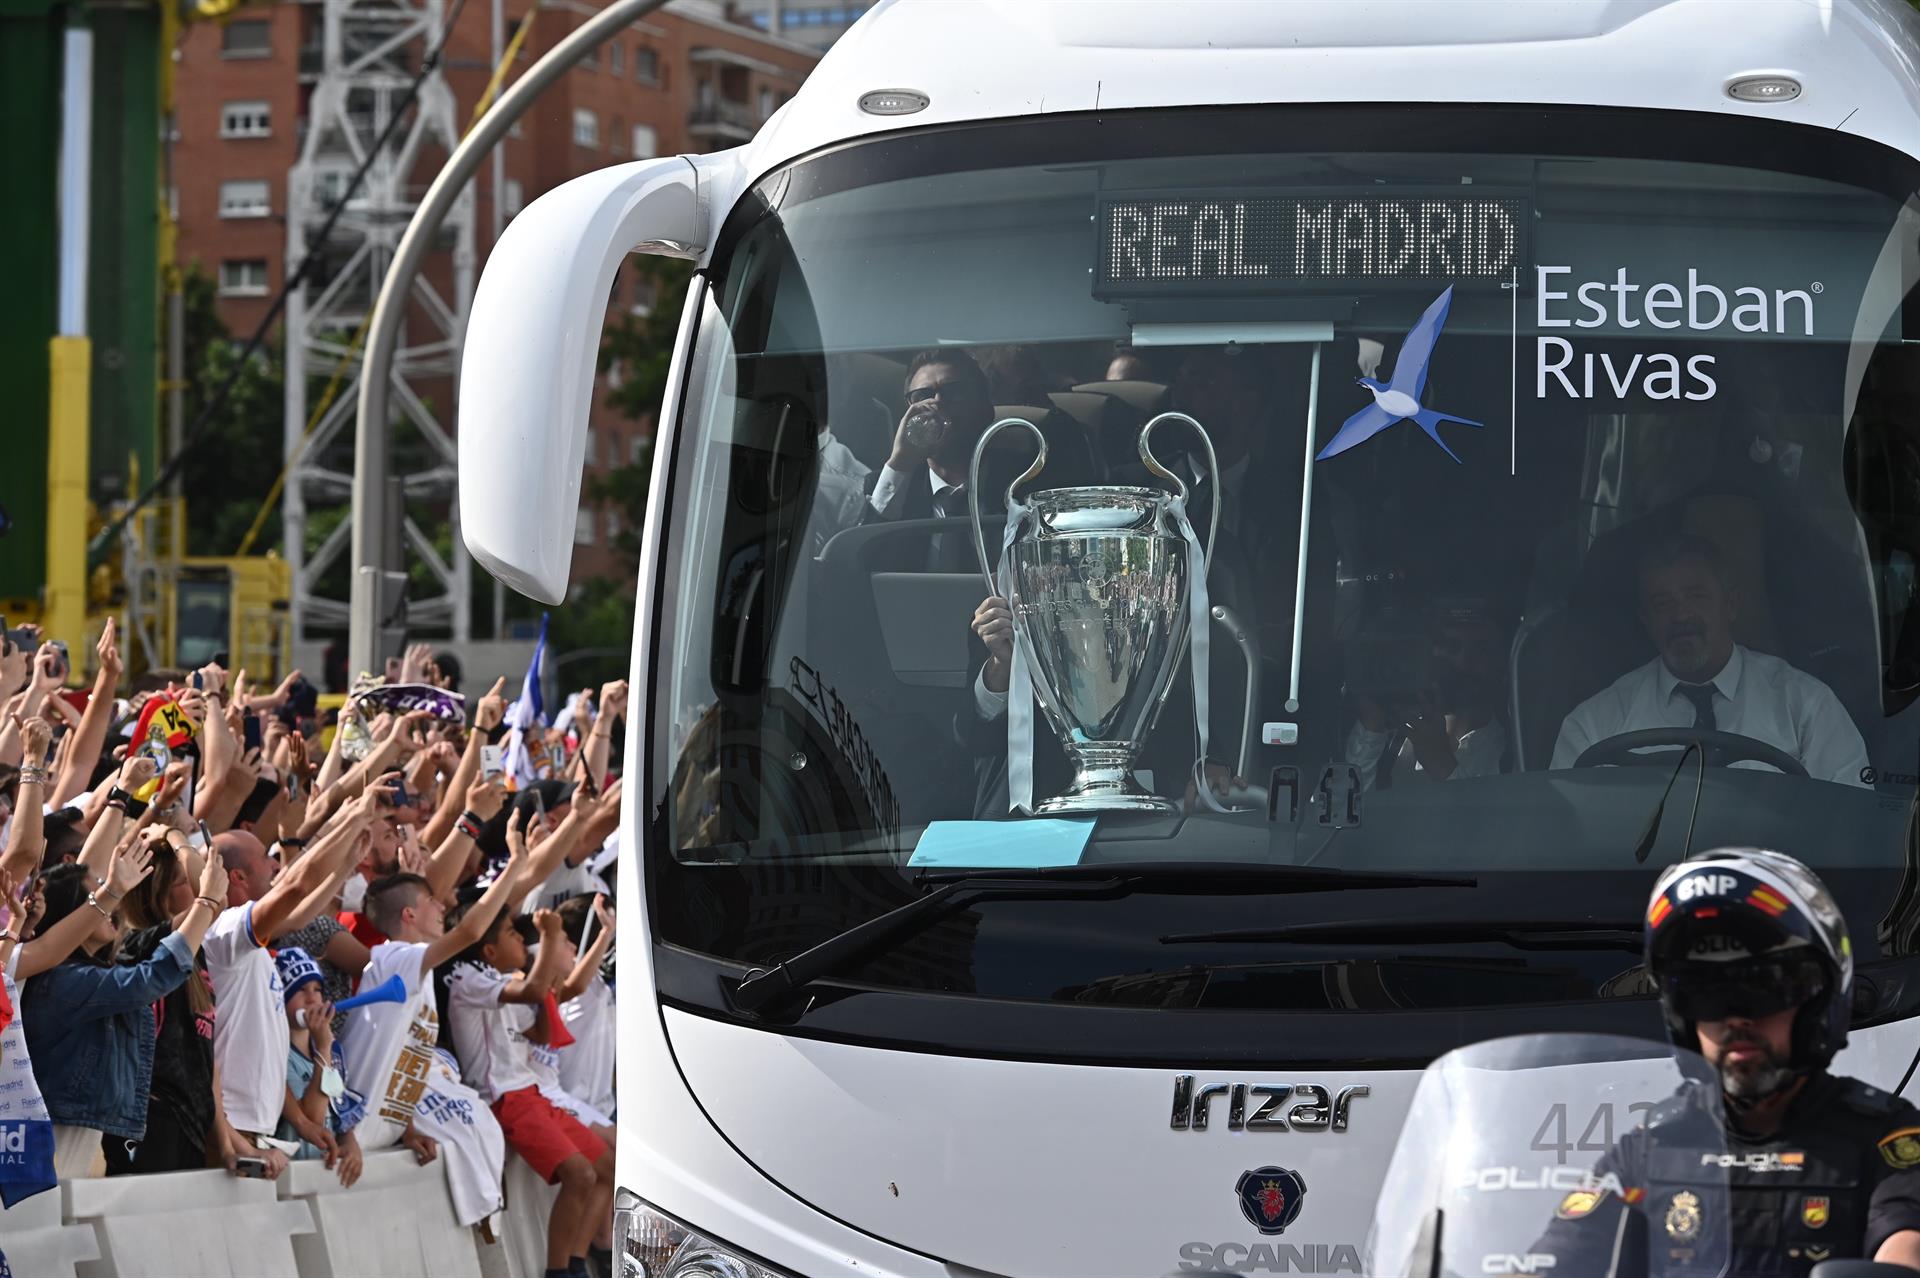 Sigue la celebración de la 'Decimocuarta' del Real Madrid